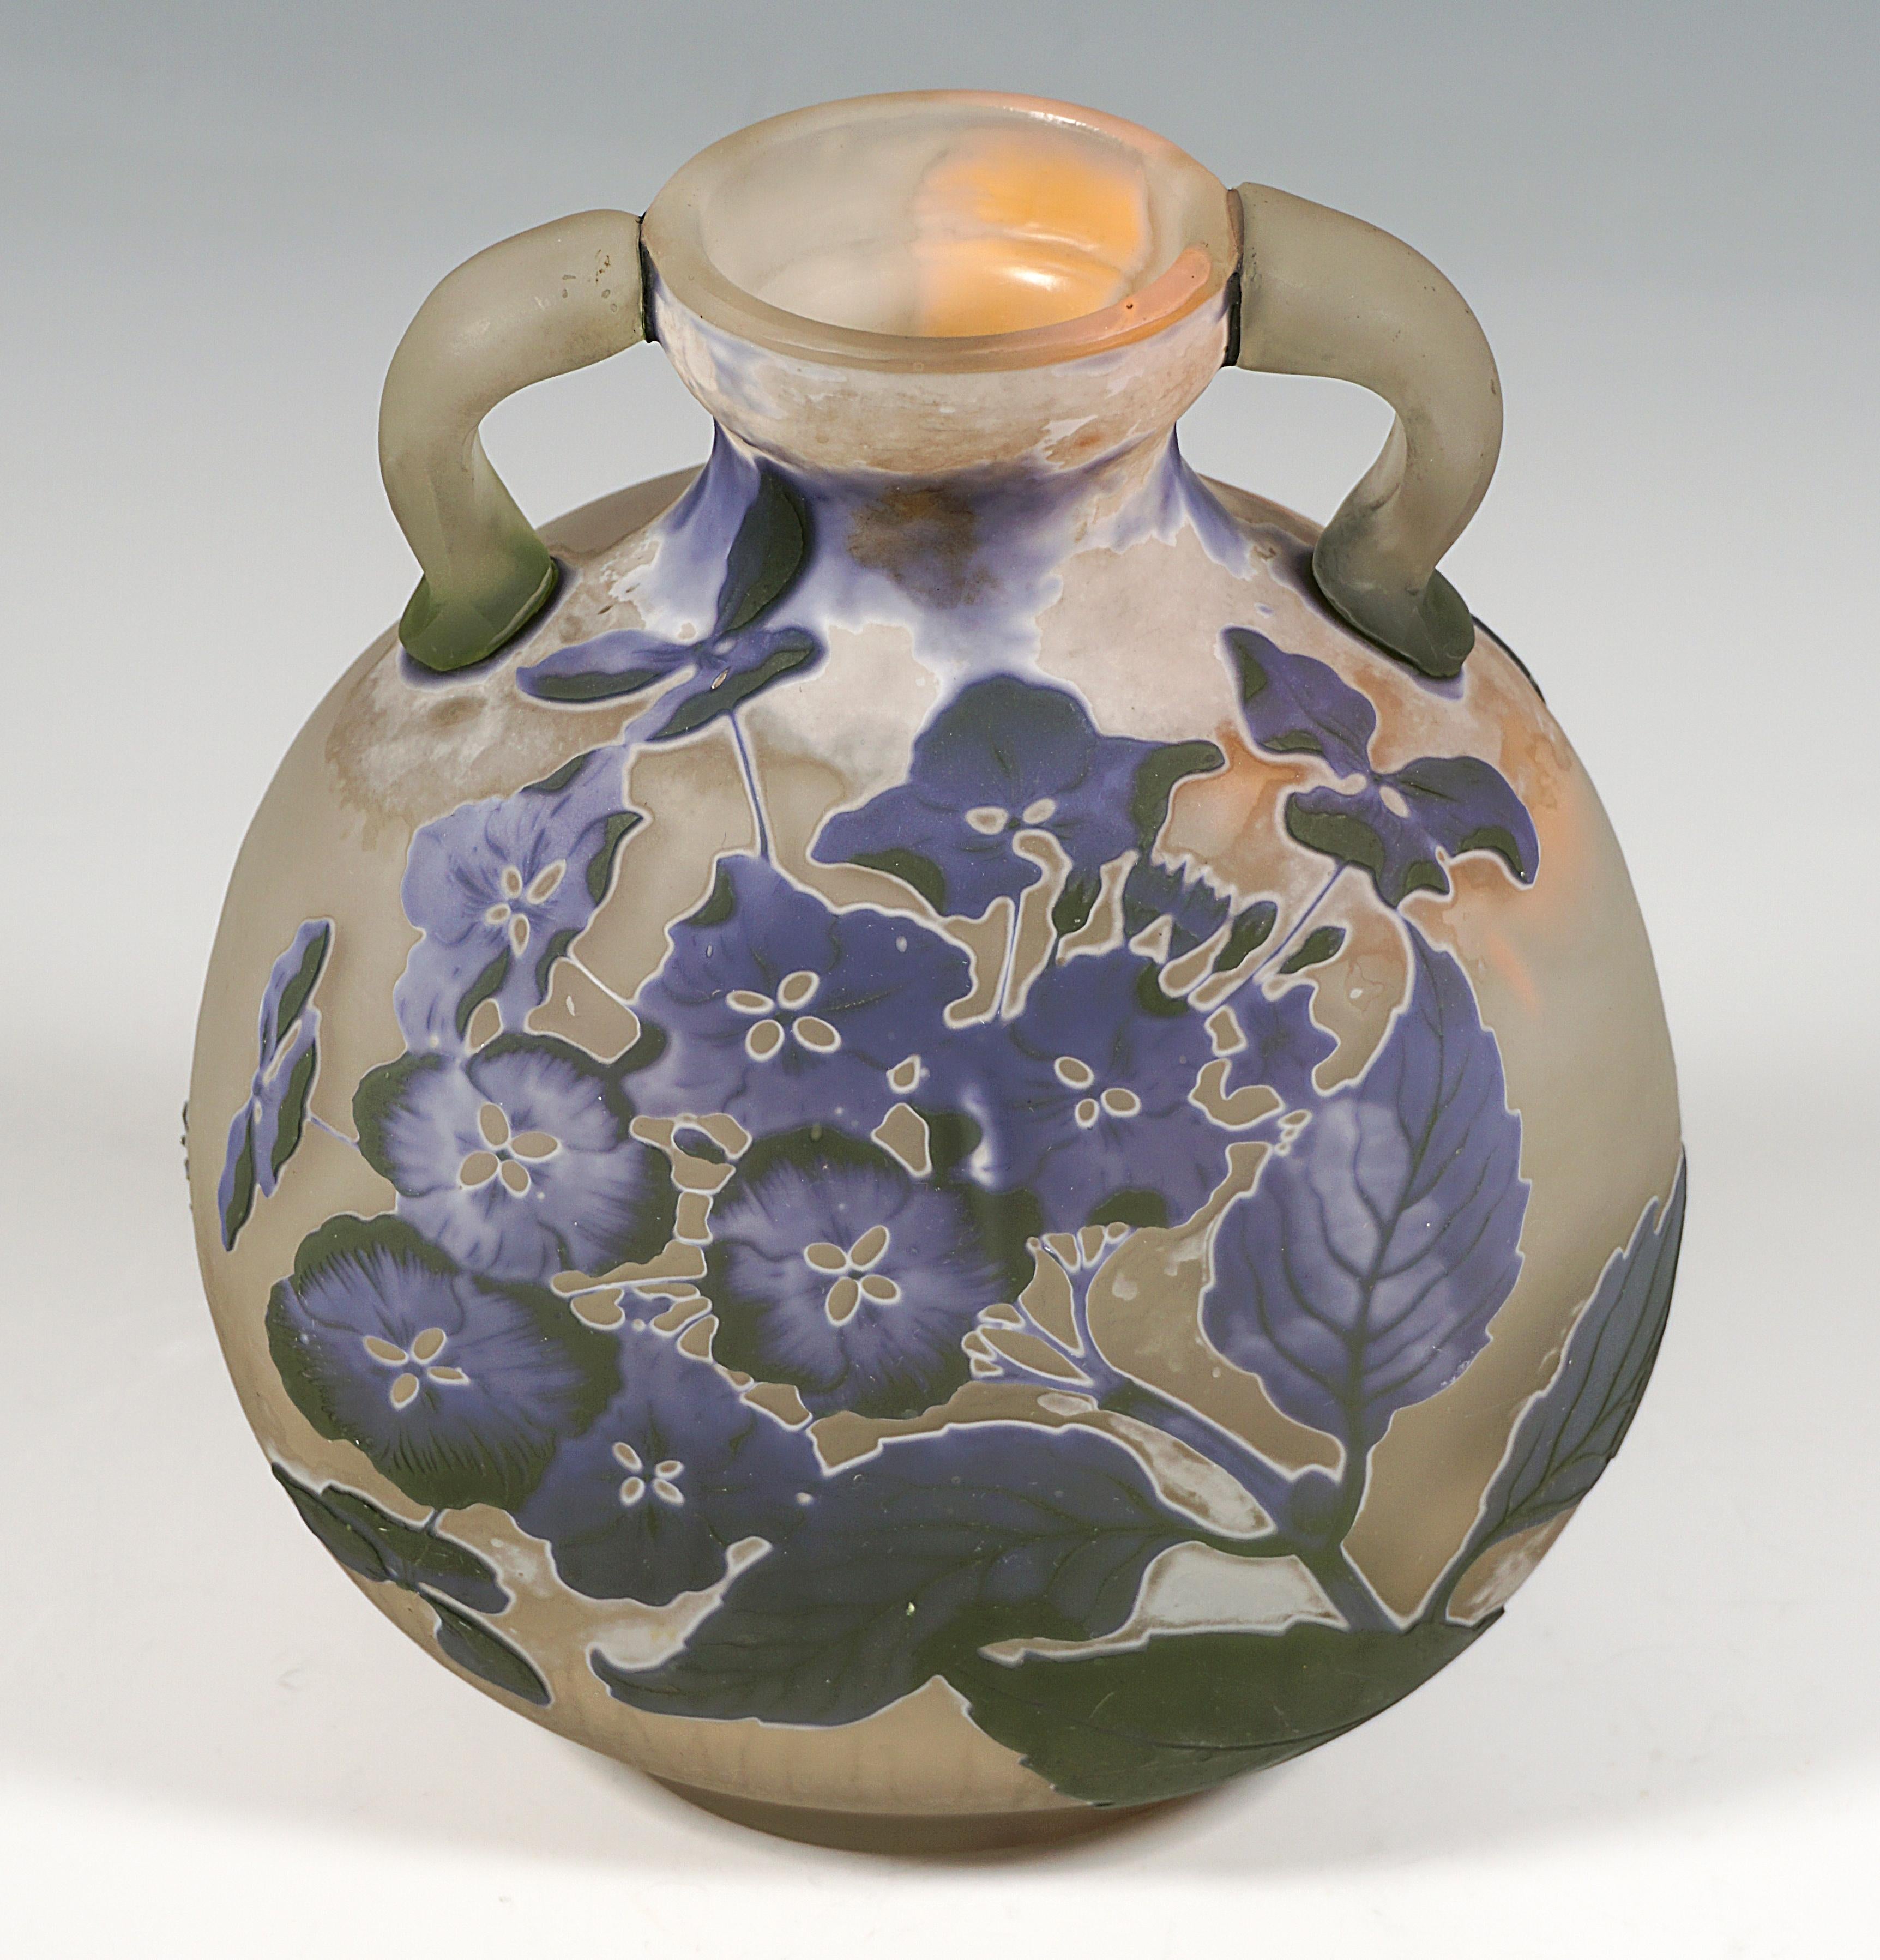 Etched Émile Gallé Round Art Nouveau Cameo Handle Vase With Hydrangea Decor France 1905 For Sale